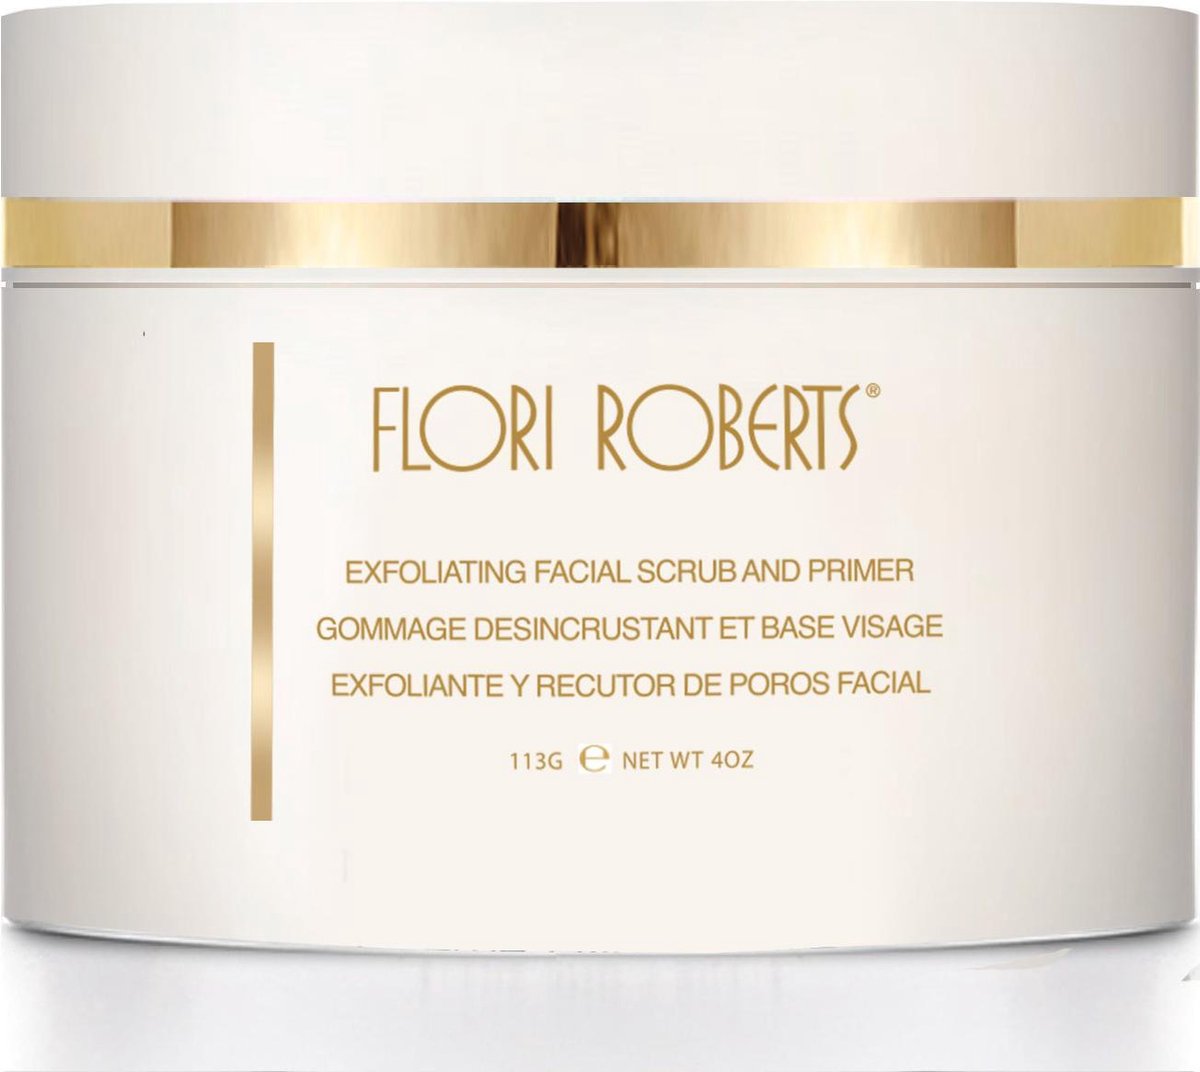 Flori Roberts Exfoliërende gezichtsscrub & primer